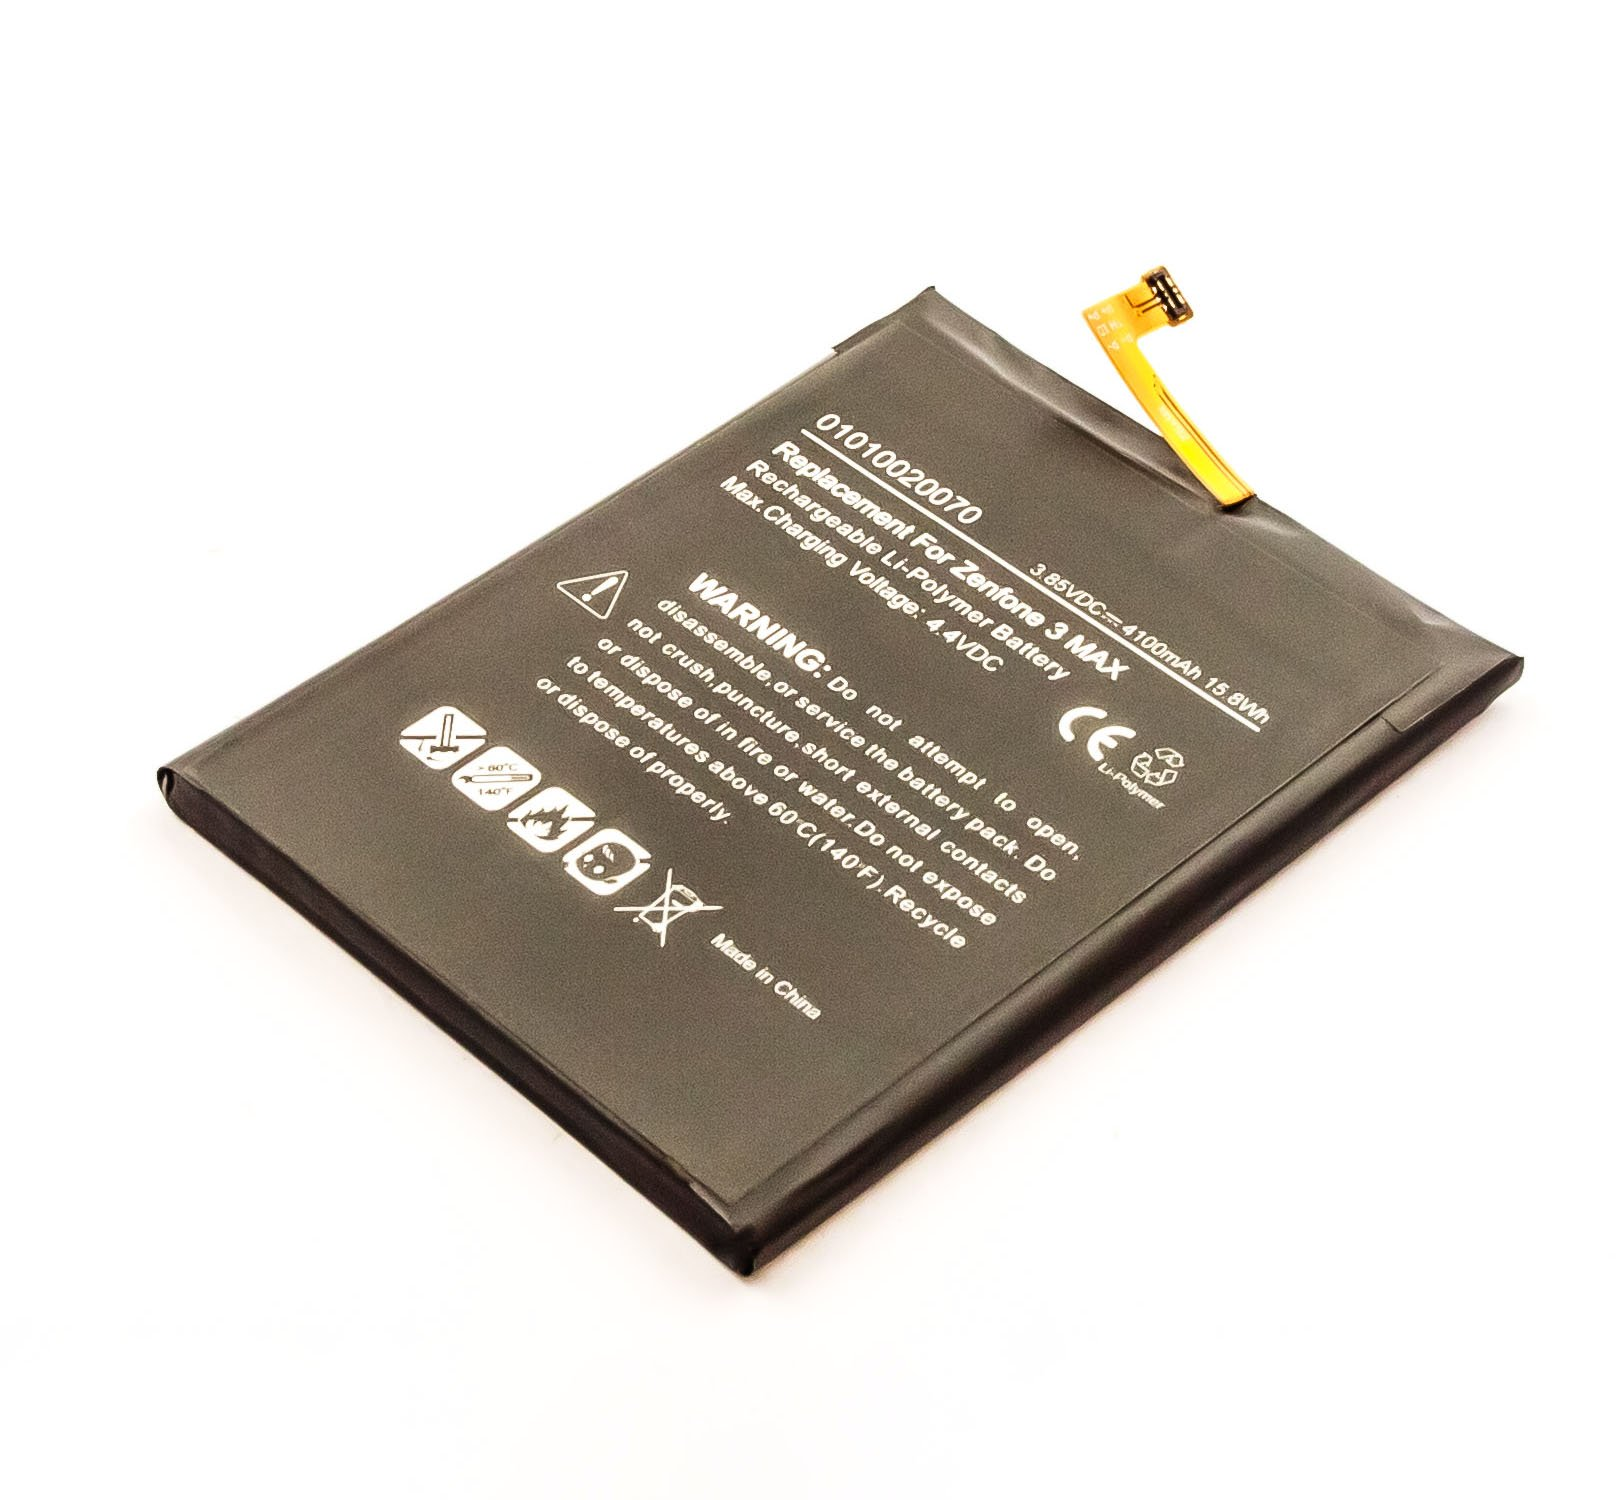 AGI Akku kompatibel mit Asus Max 4100 SIM 3.9 ZenFone Dual Volt, Li-Pol 3 mAh Handy-/Smartphoneakku